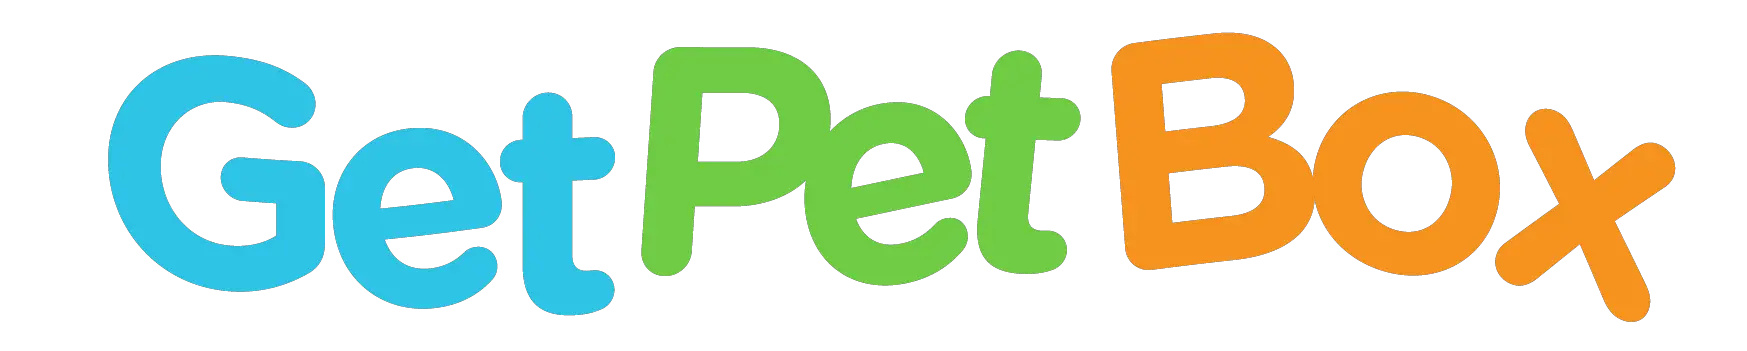 Get Petbox